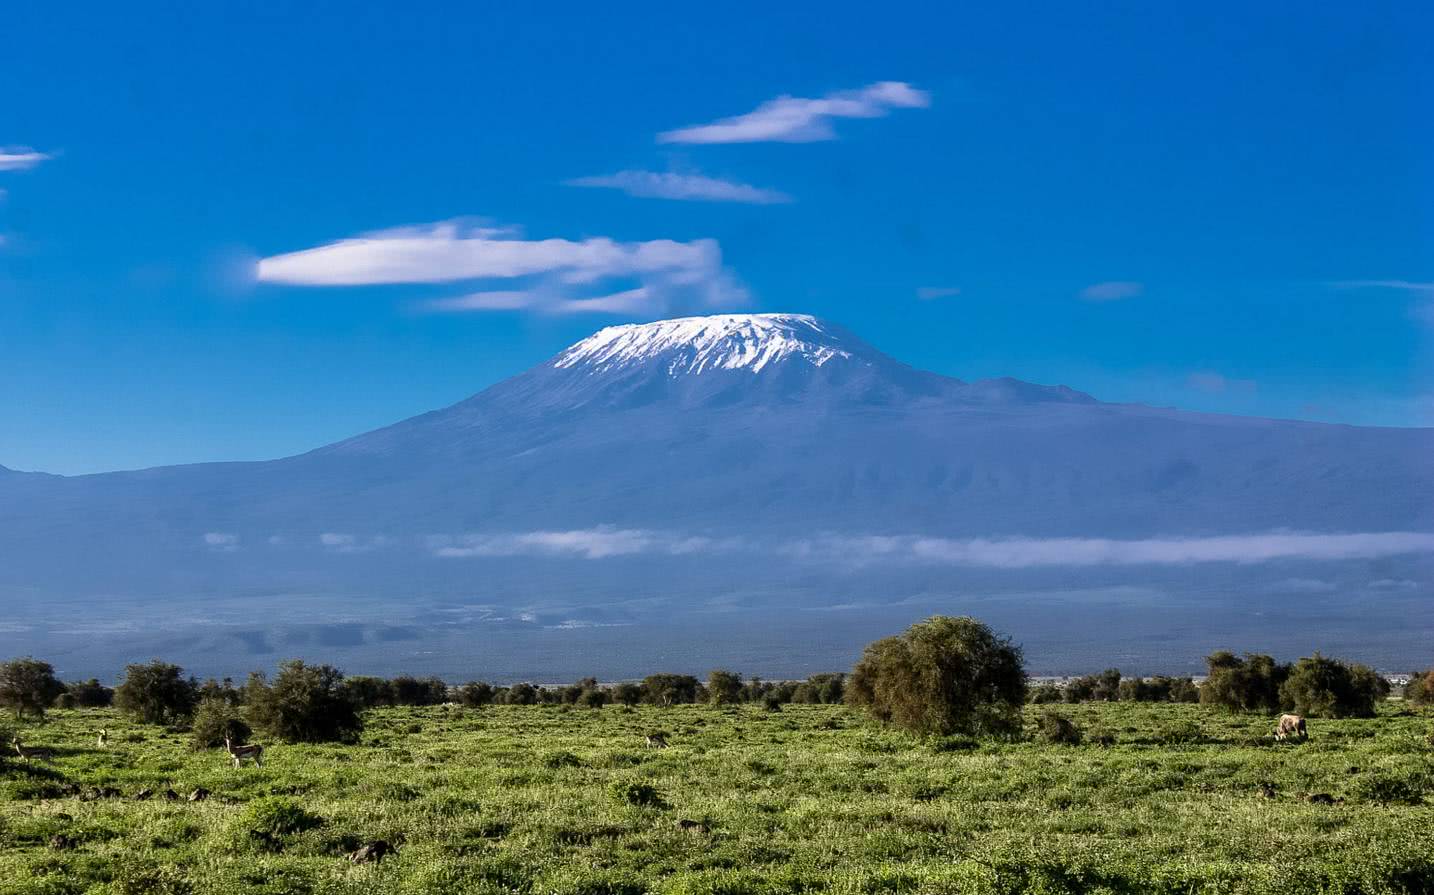 乞力马扎罗山是非洲第一高峰,海拔5895米,被称作为非洲的珠穆朗玛峰